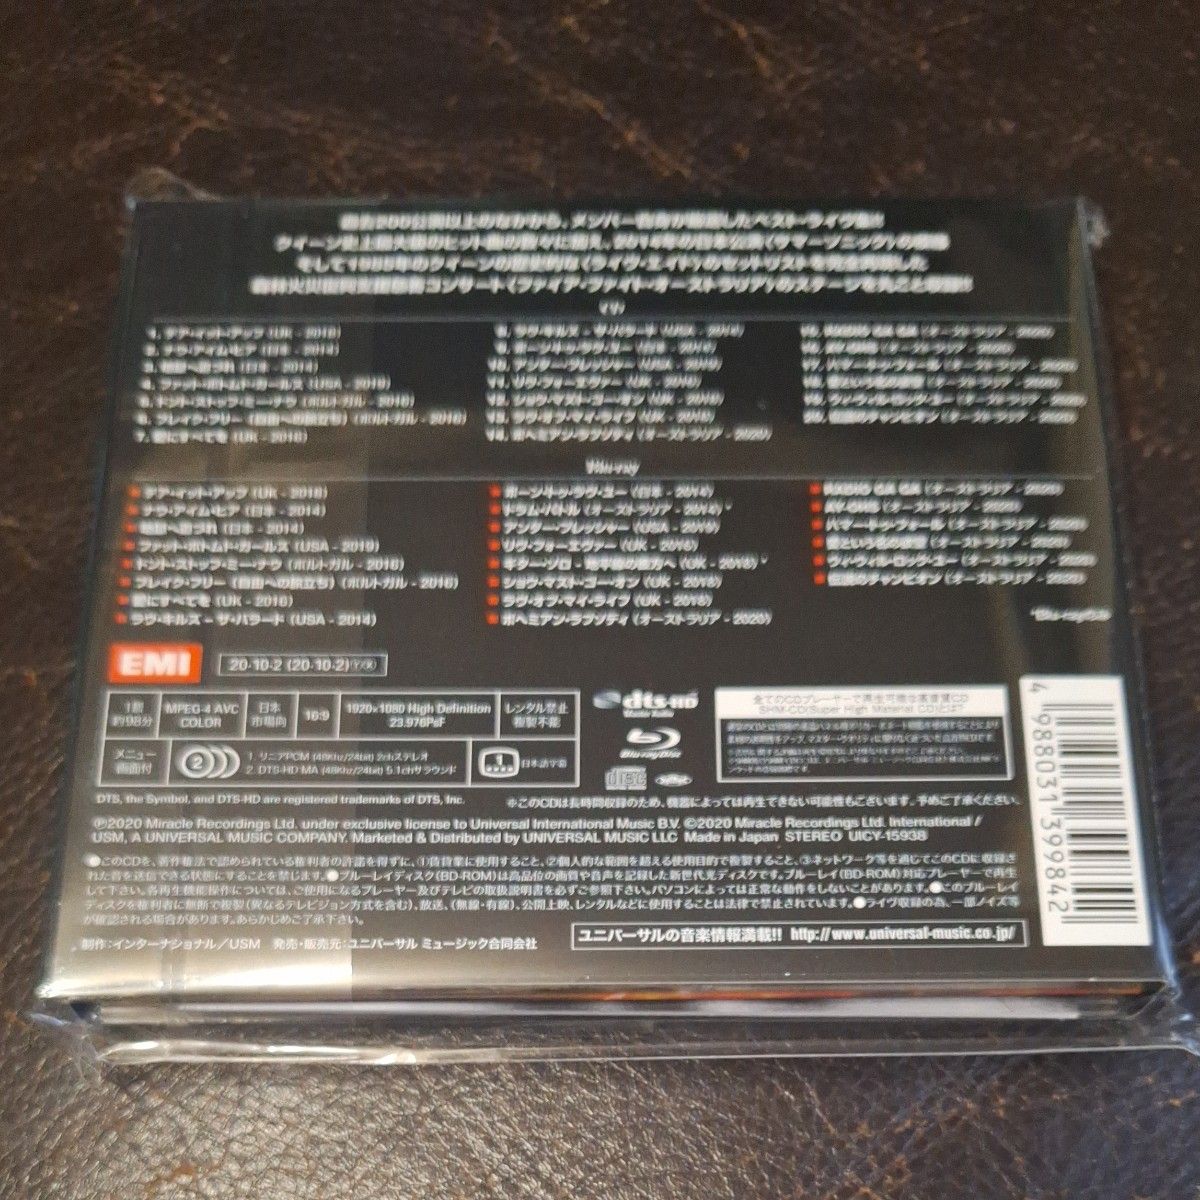  ライヴアラウンドザワールド (Blu-ray Disc) CD クイーン+アダムランバート Blu-ray